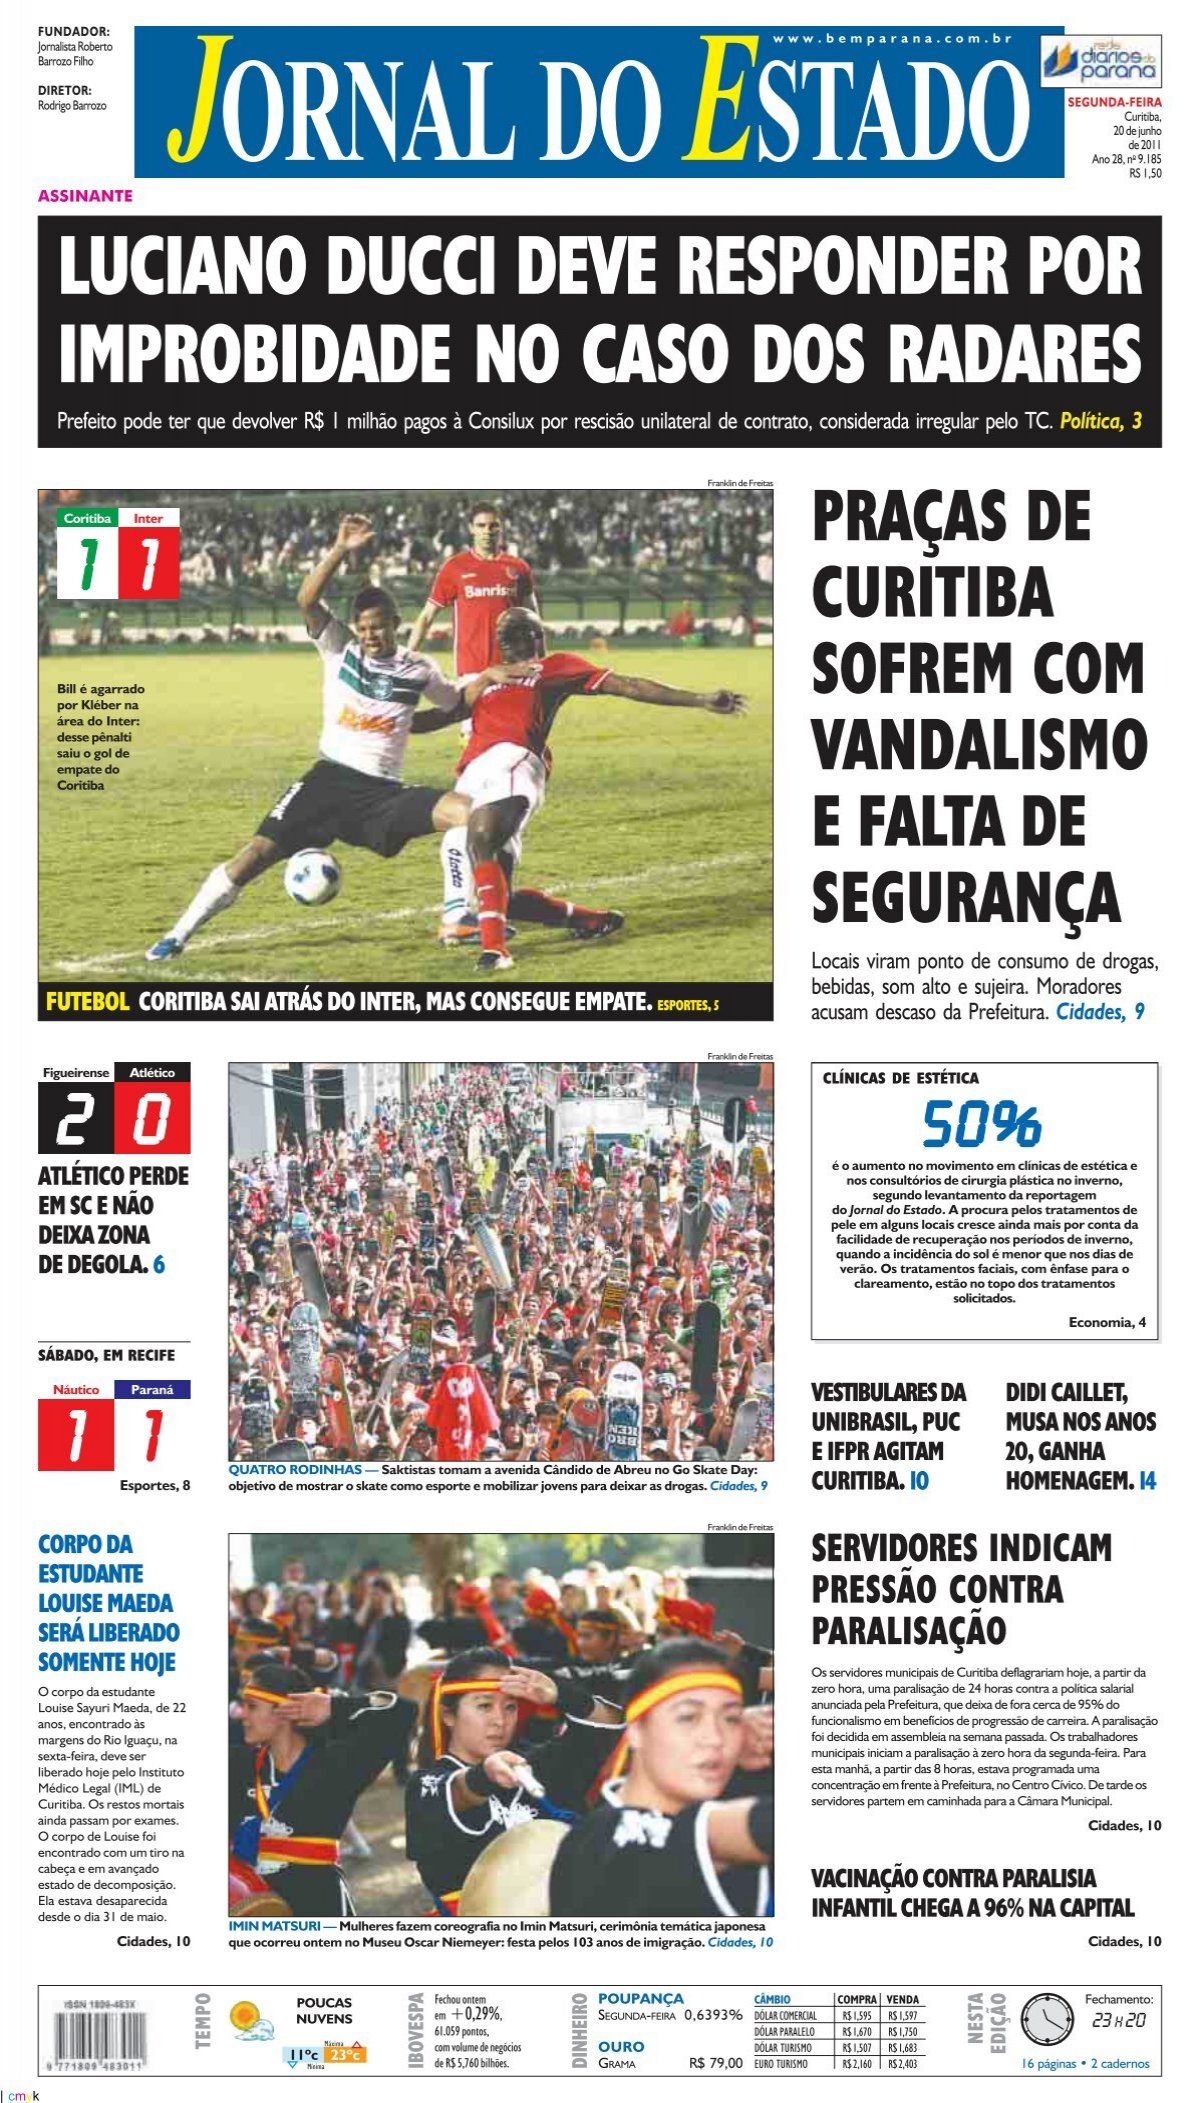 AGORA: Globo paralisa jornal com rasteira de Ronaldo no Santos